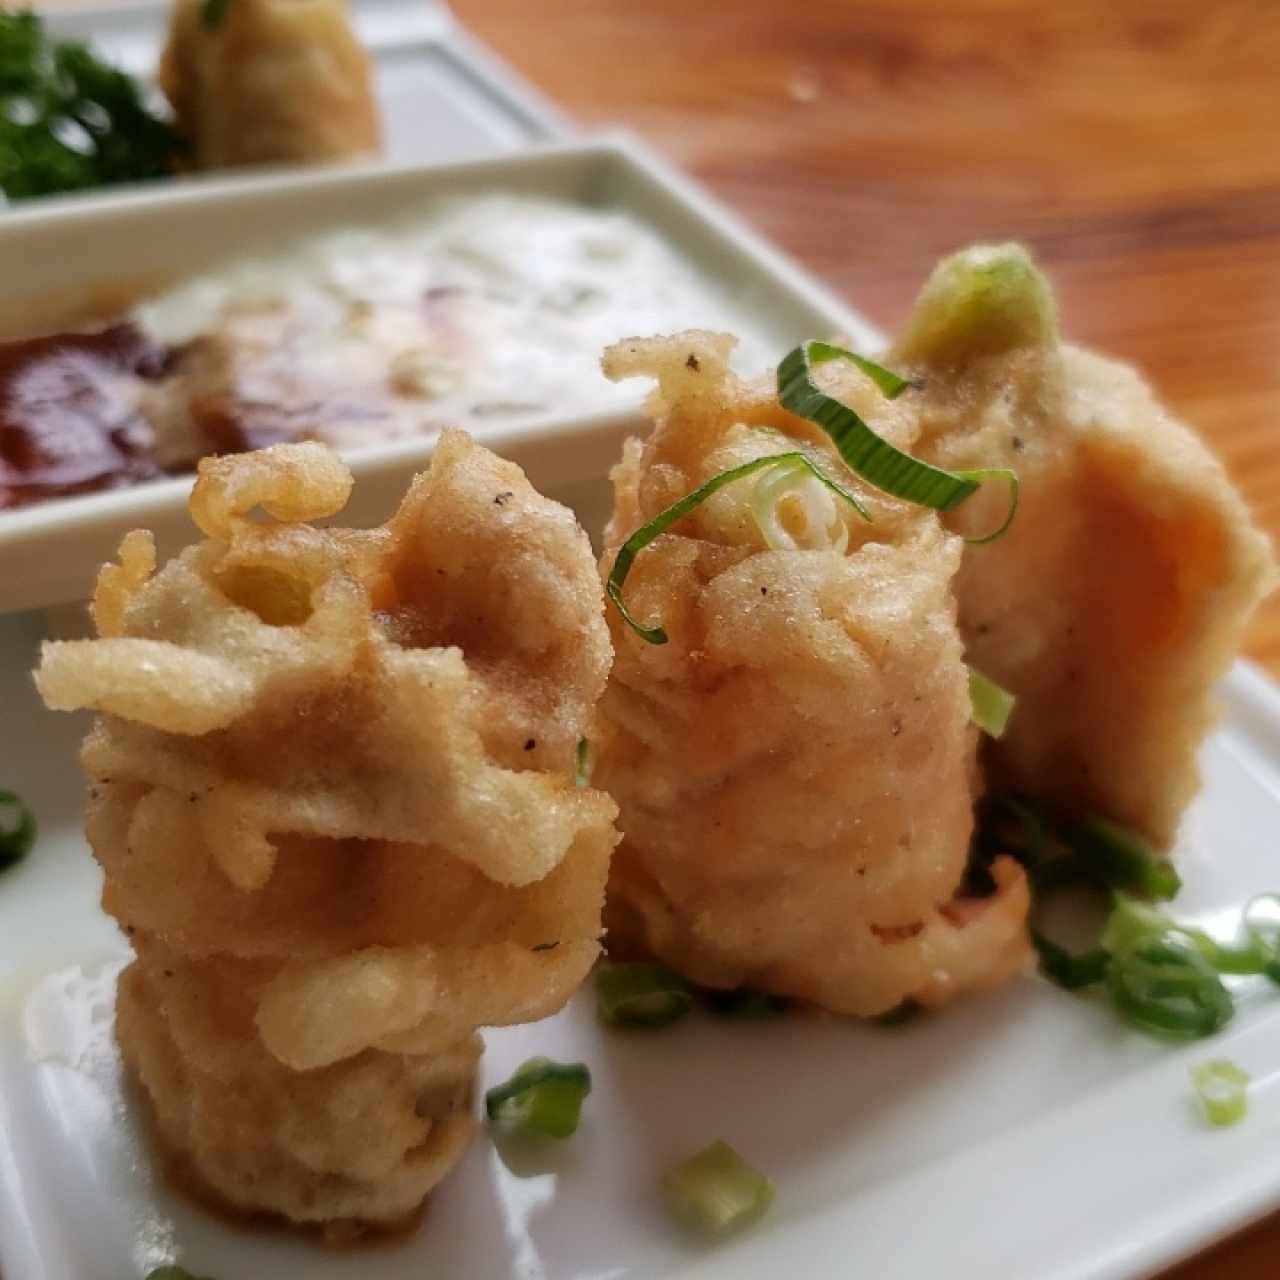 Entradas - Salmón tempura